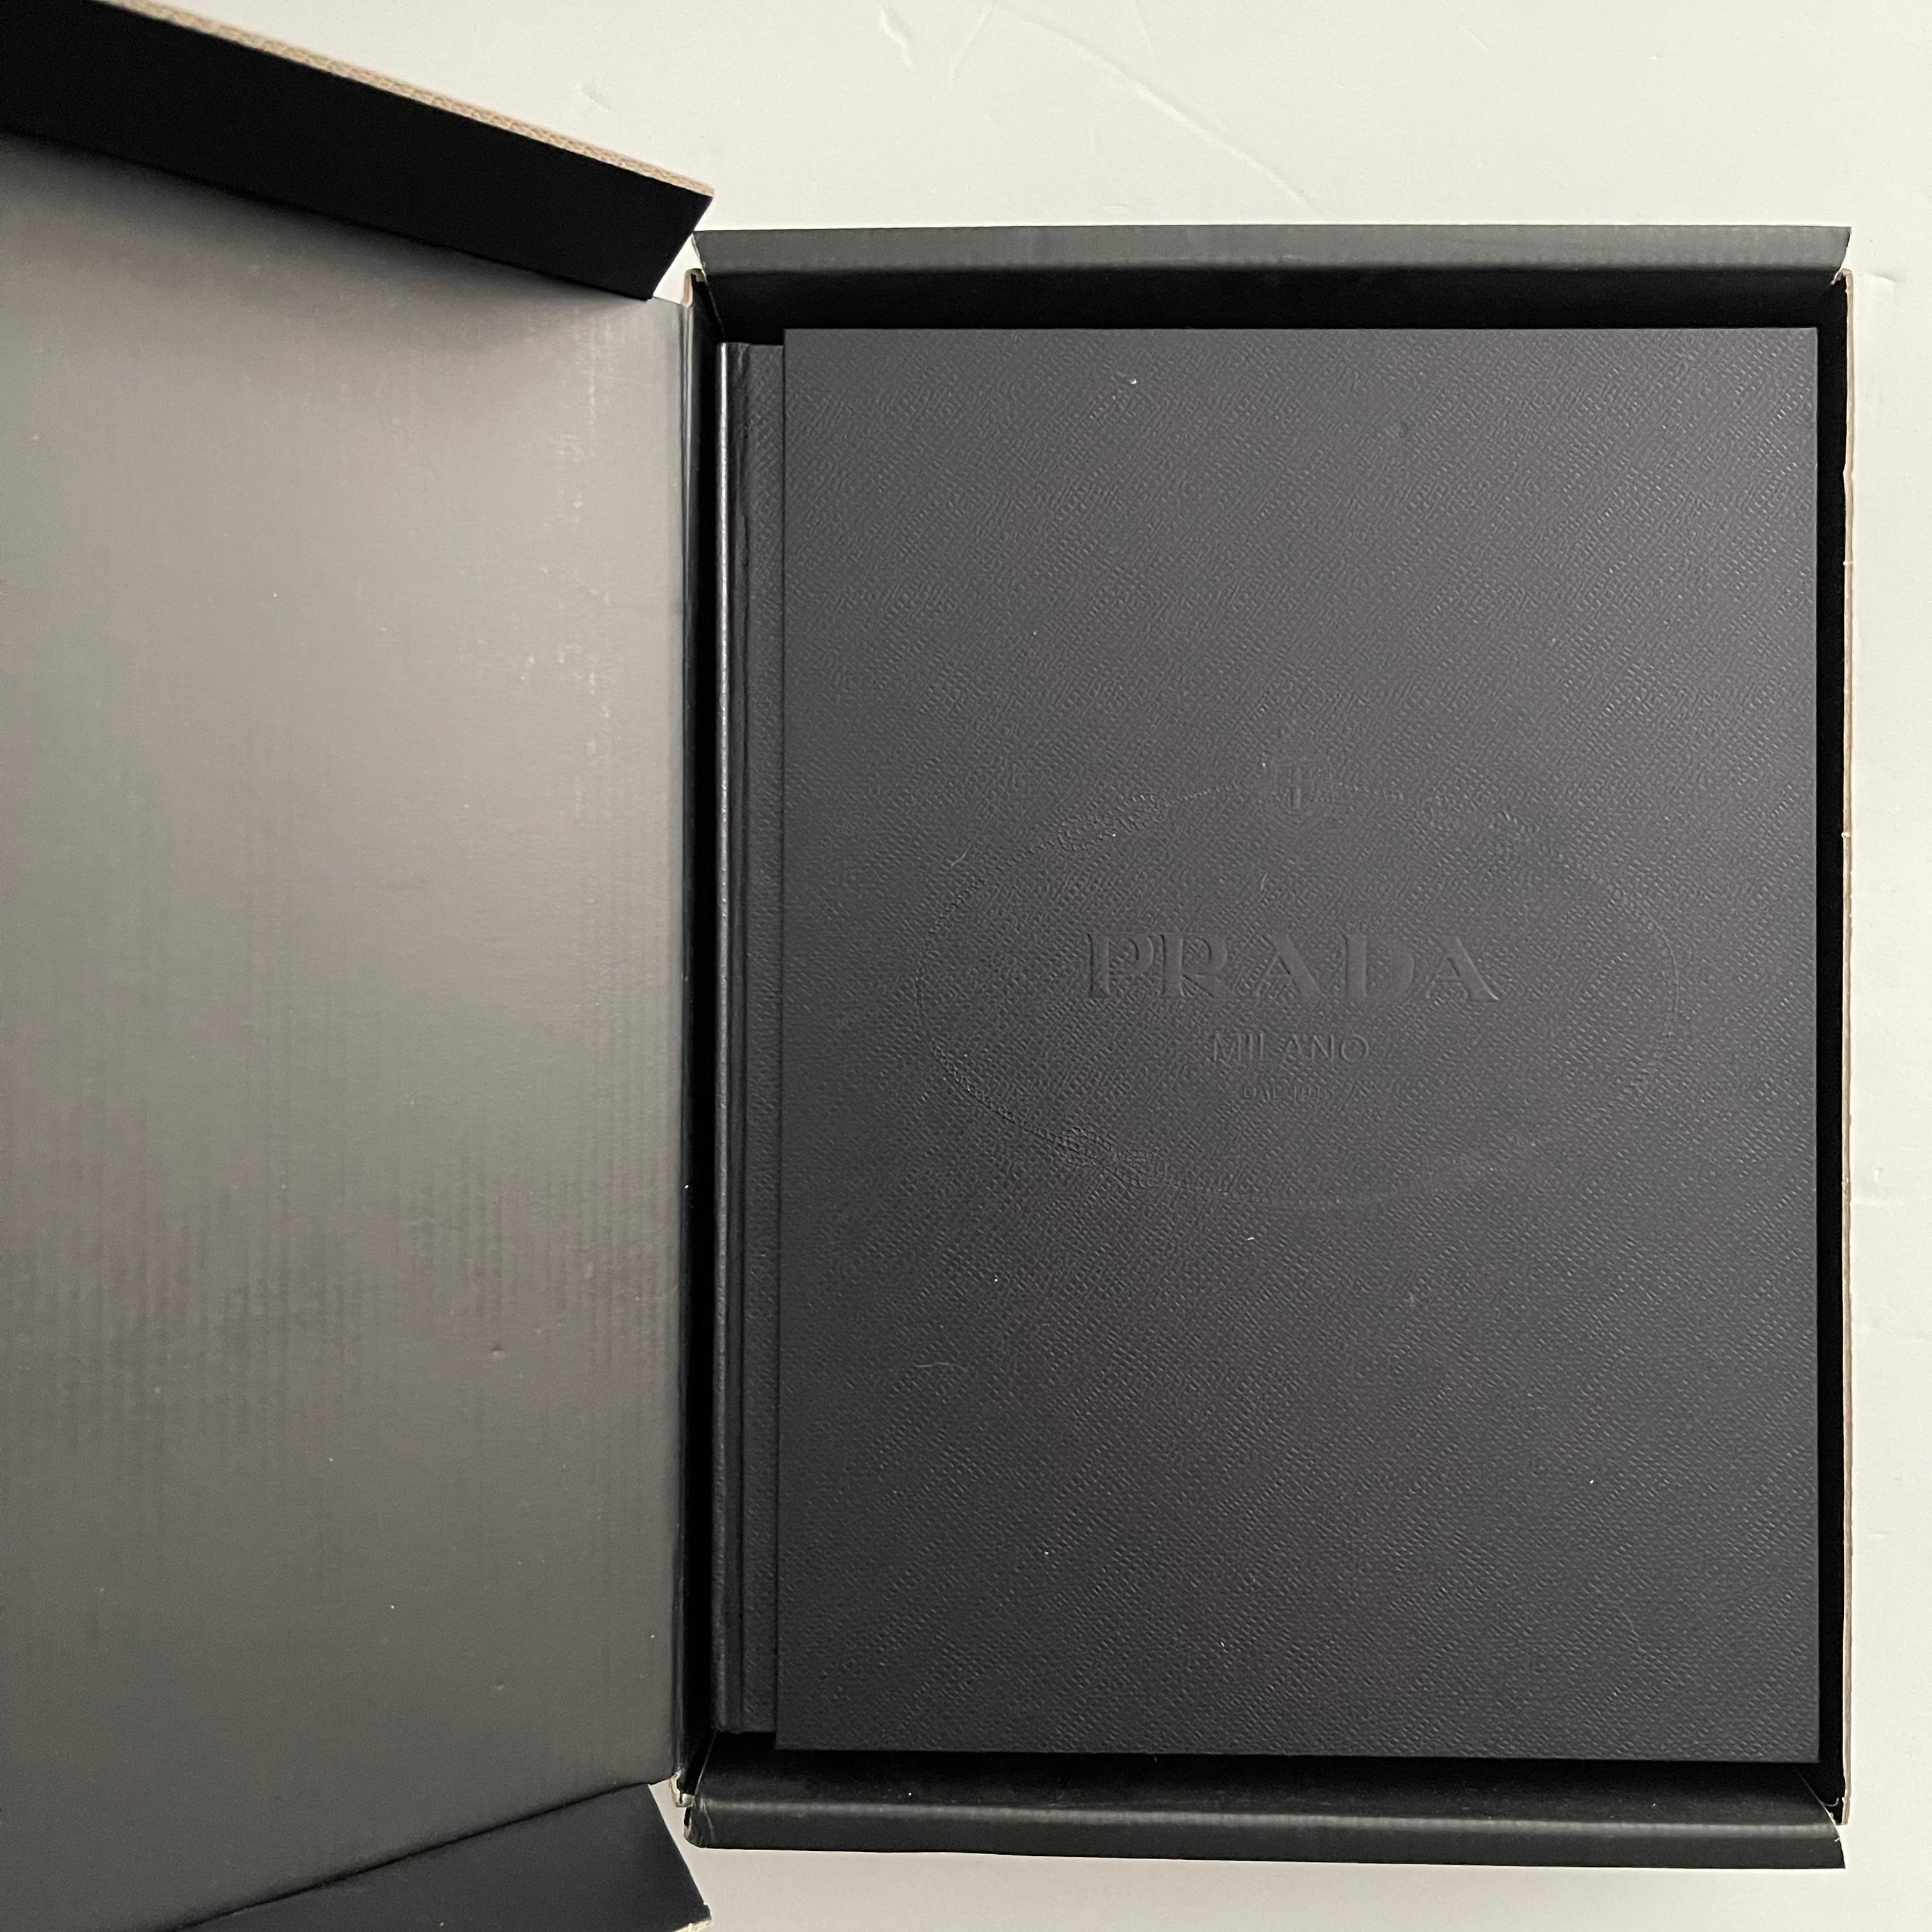 Publié par la Fondazione Prada, 2009 dans un coffret et une boîte d'origine.

Prada est le premier livre qui documente trois décennies de mode, d'architecture, de cinéma et d'art révolutionnaires de la société Prada, y compris le travail du studio